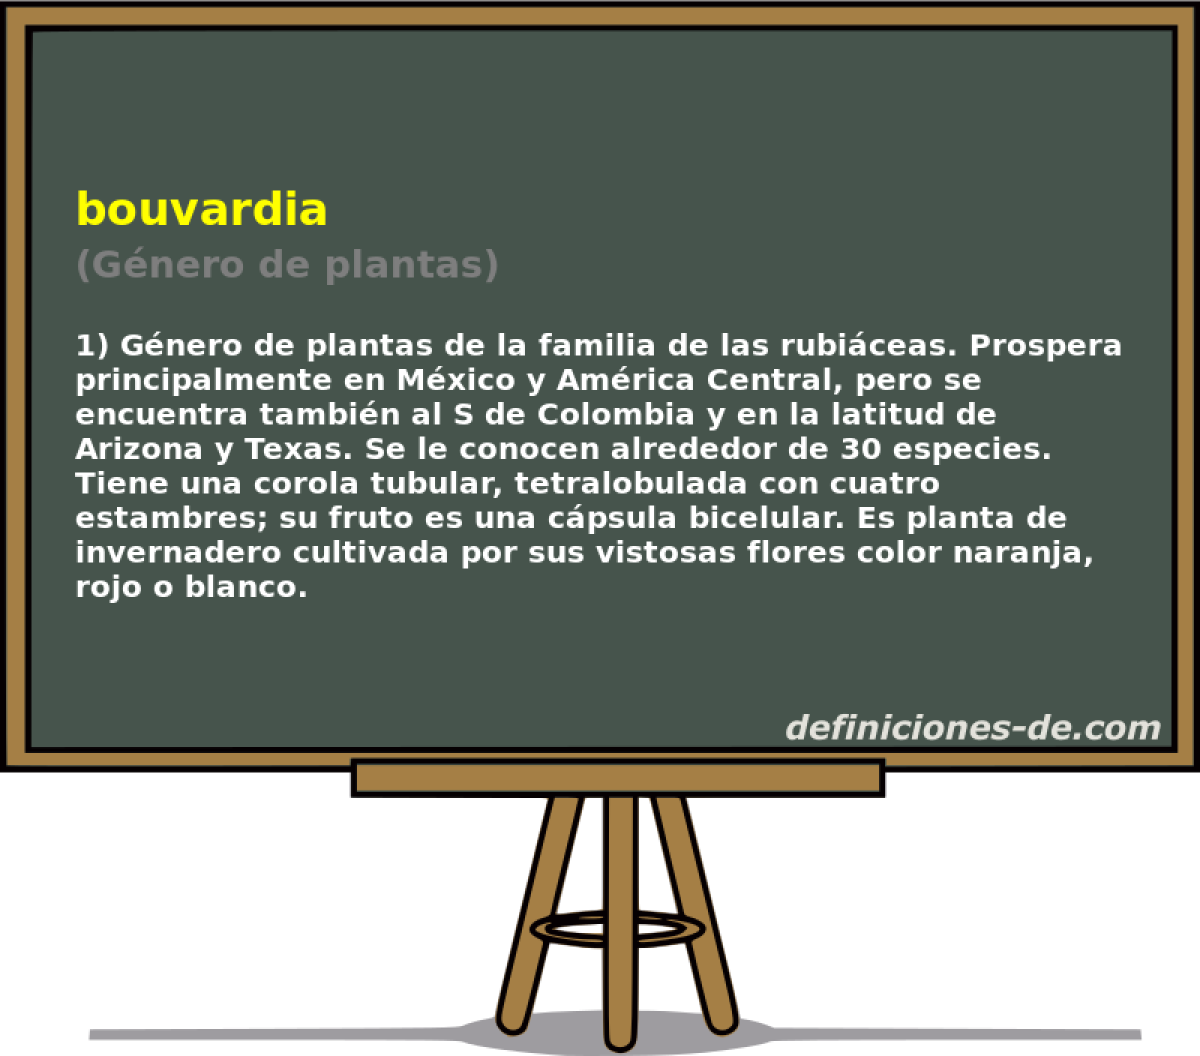 bouvardia (Gnero de plantas)